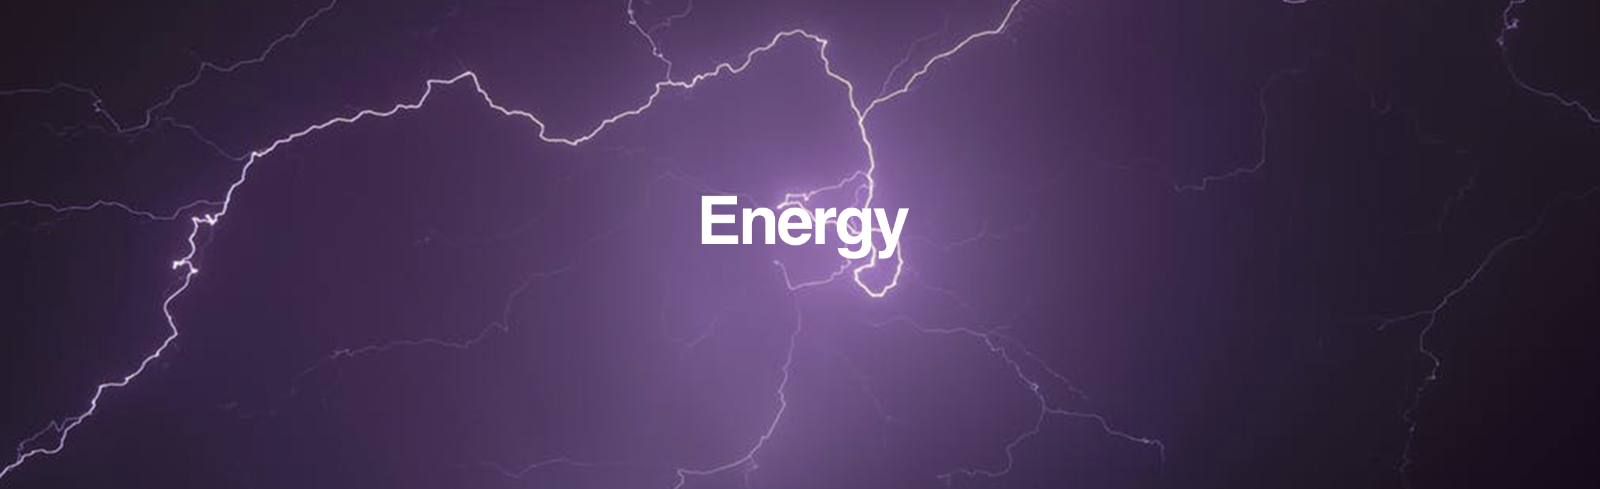 Energy banner